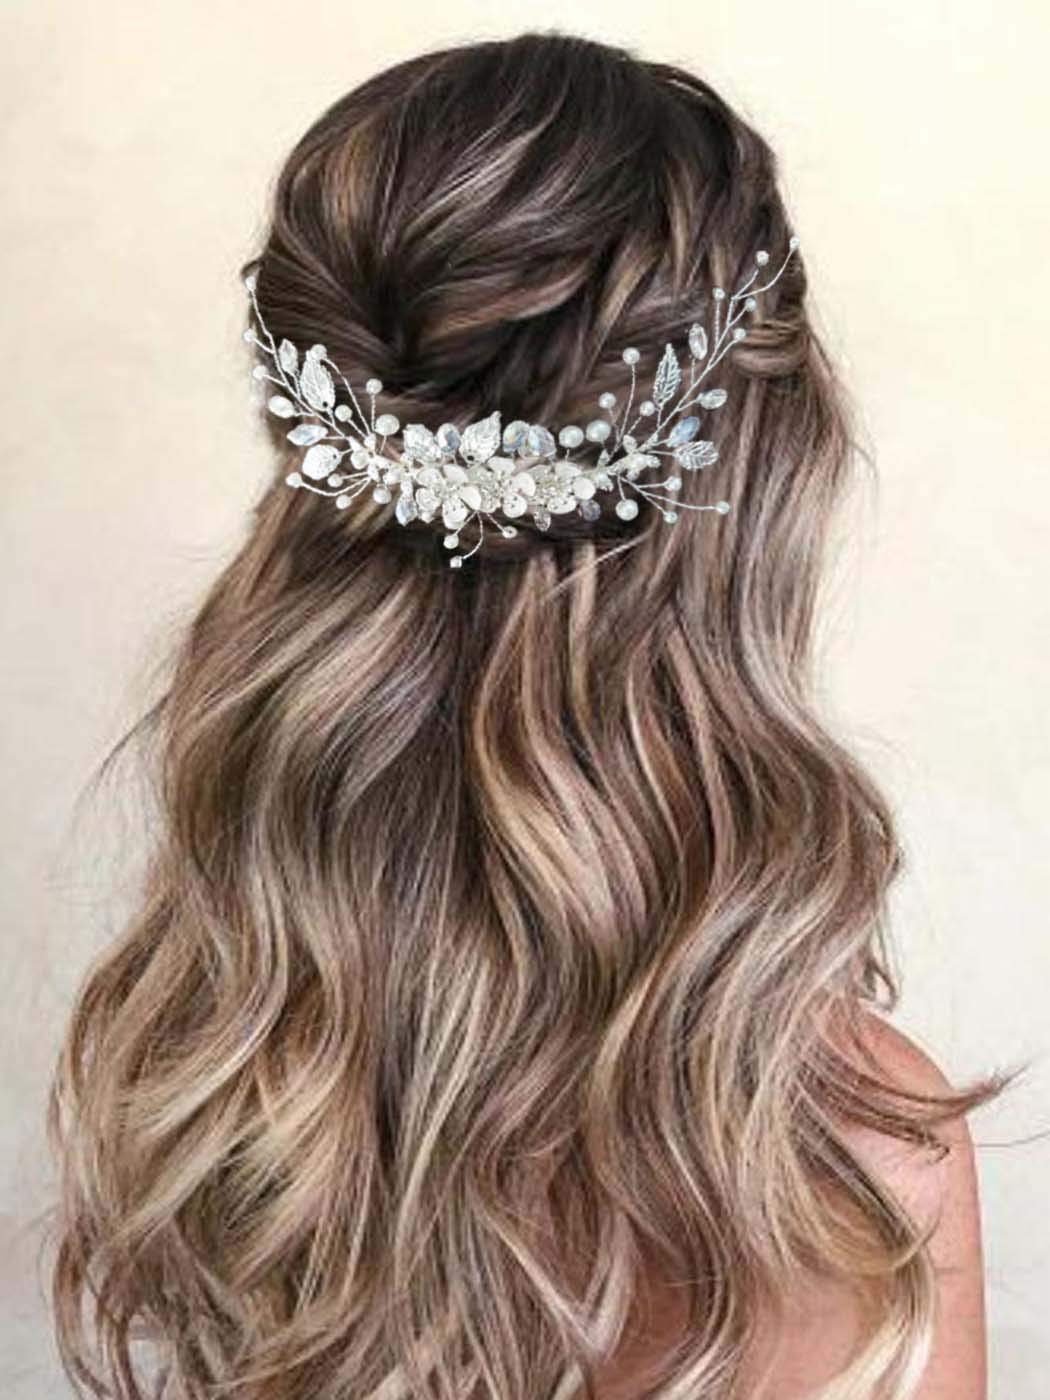 Gorais Bride Wedding Hair Vine Flower Bridal Headpieces Pearl Hair  Accessories for Women and Girls (A-Silver)